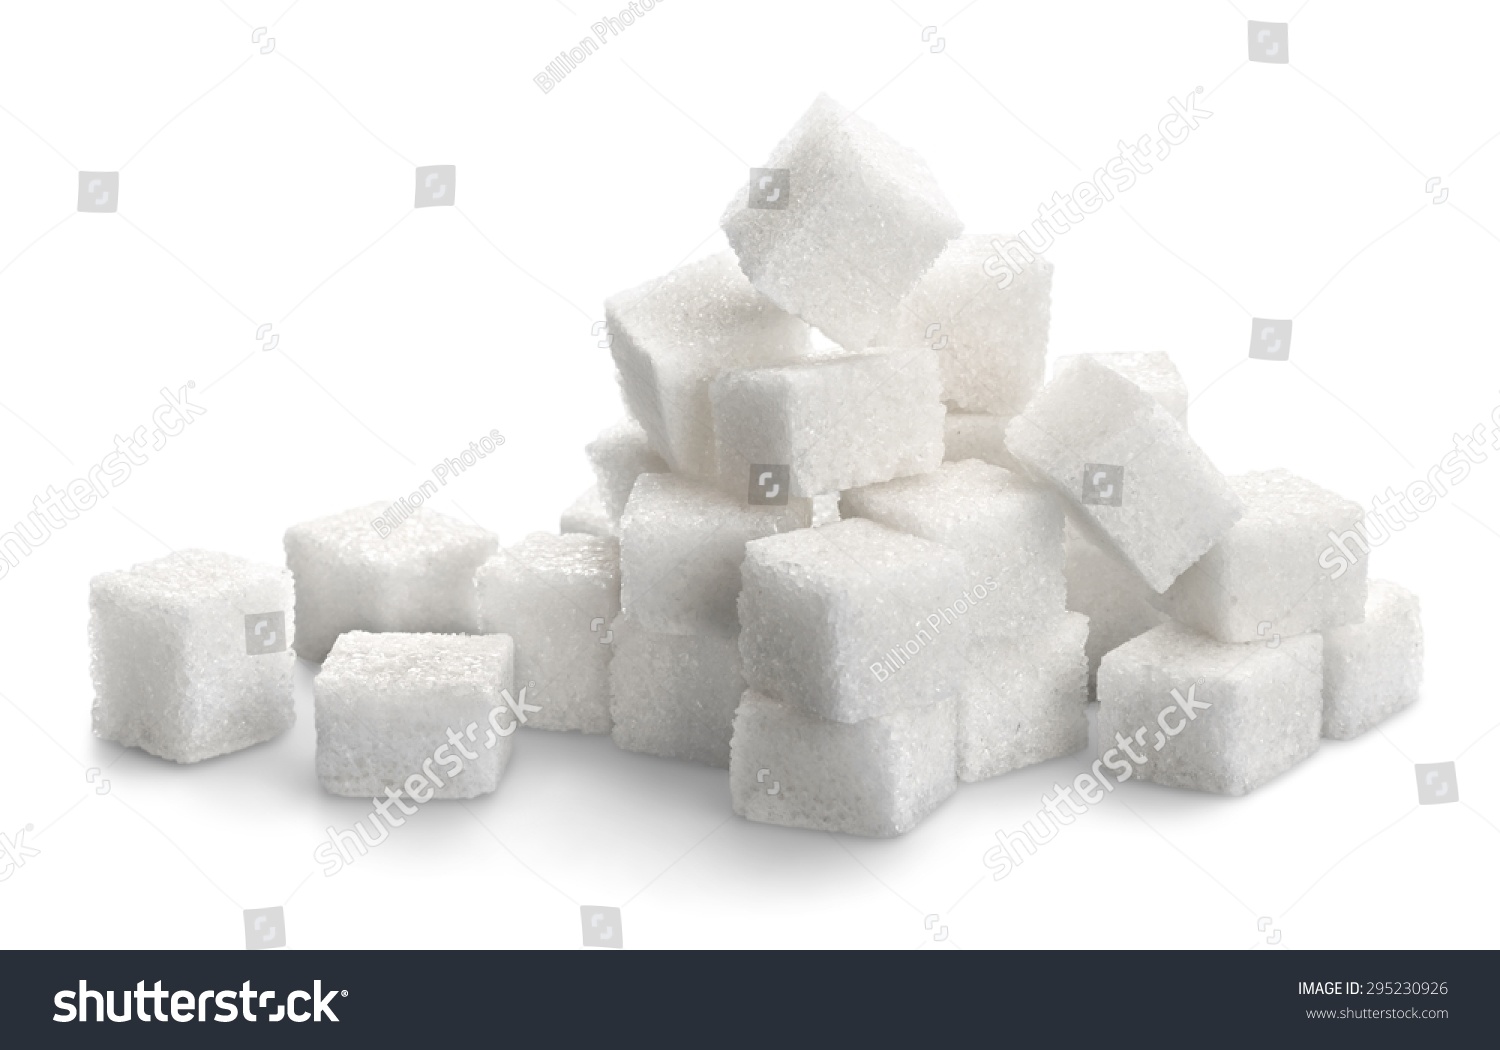 Sugar, Sugar Cube, Cube. #295230926